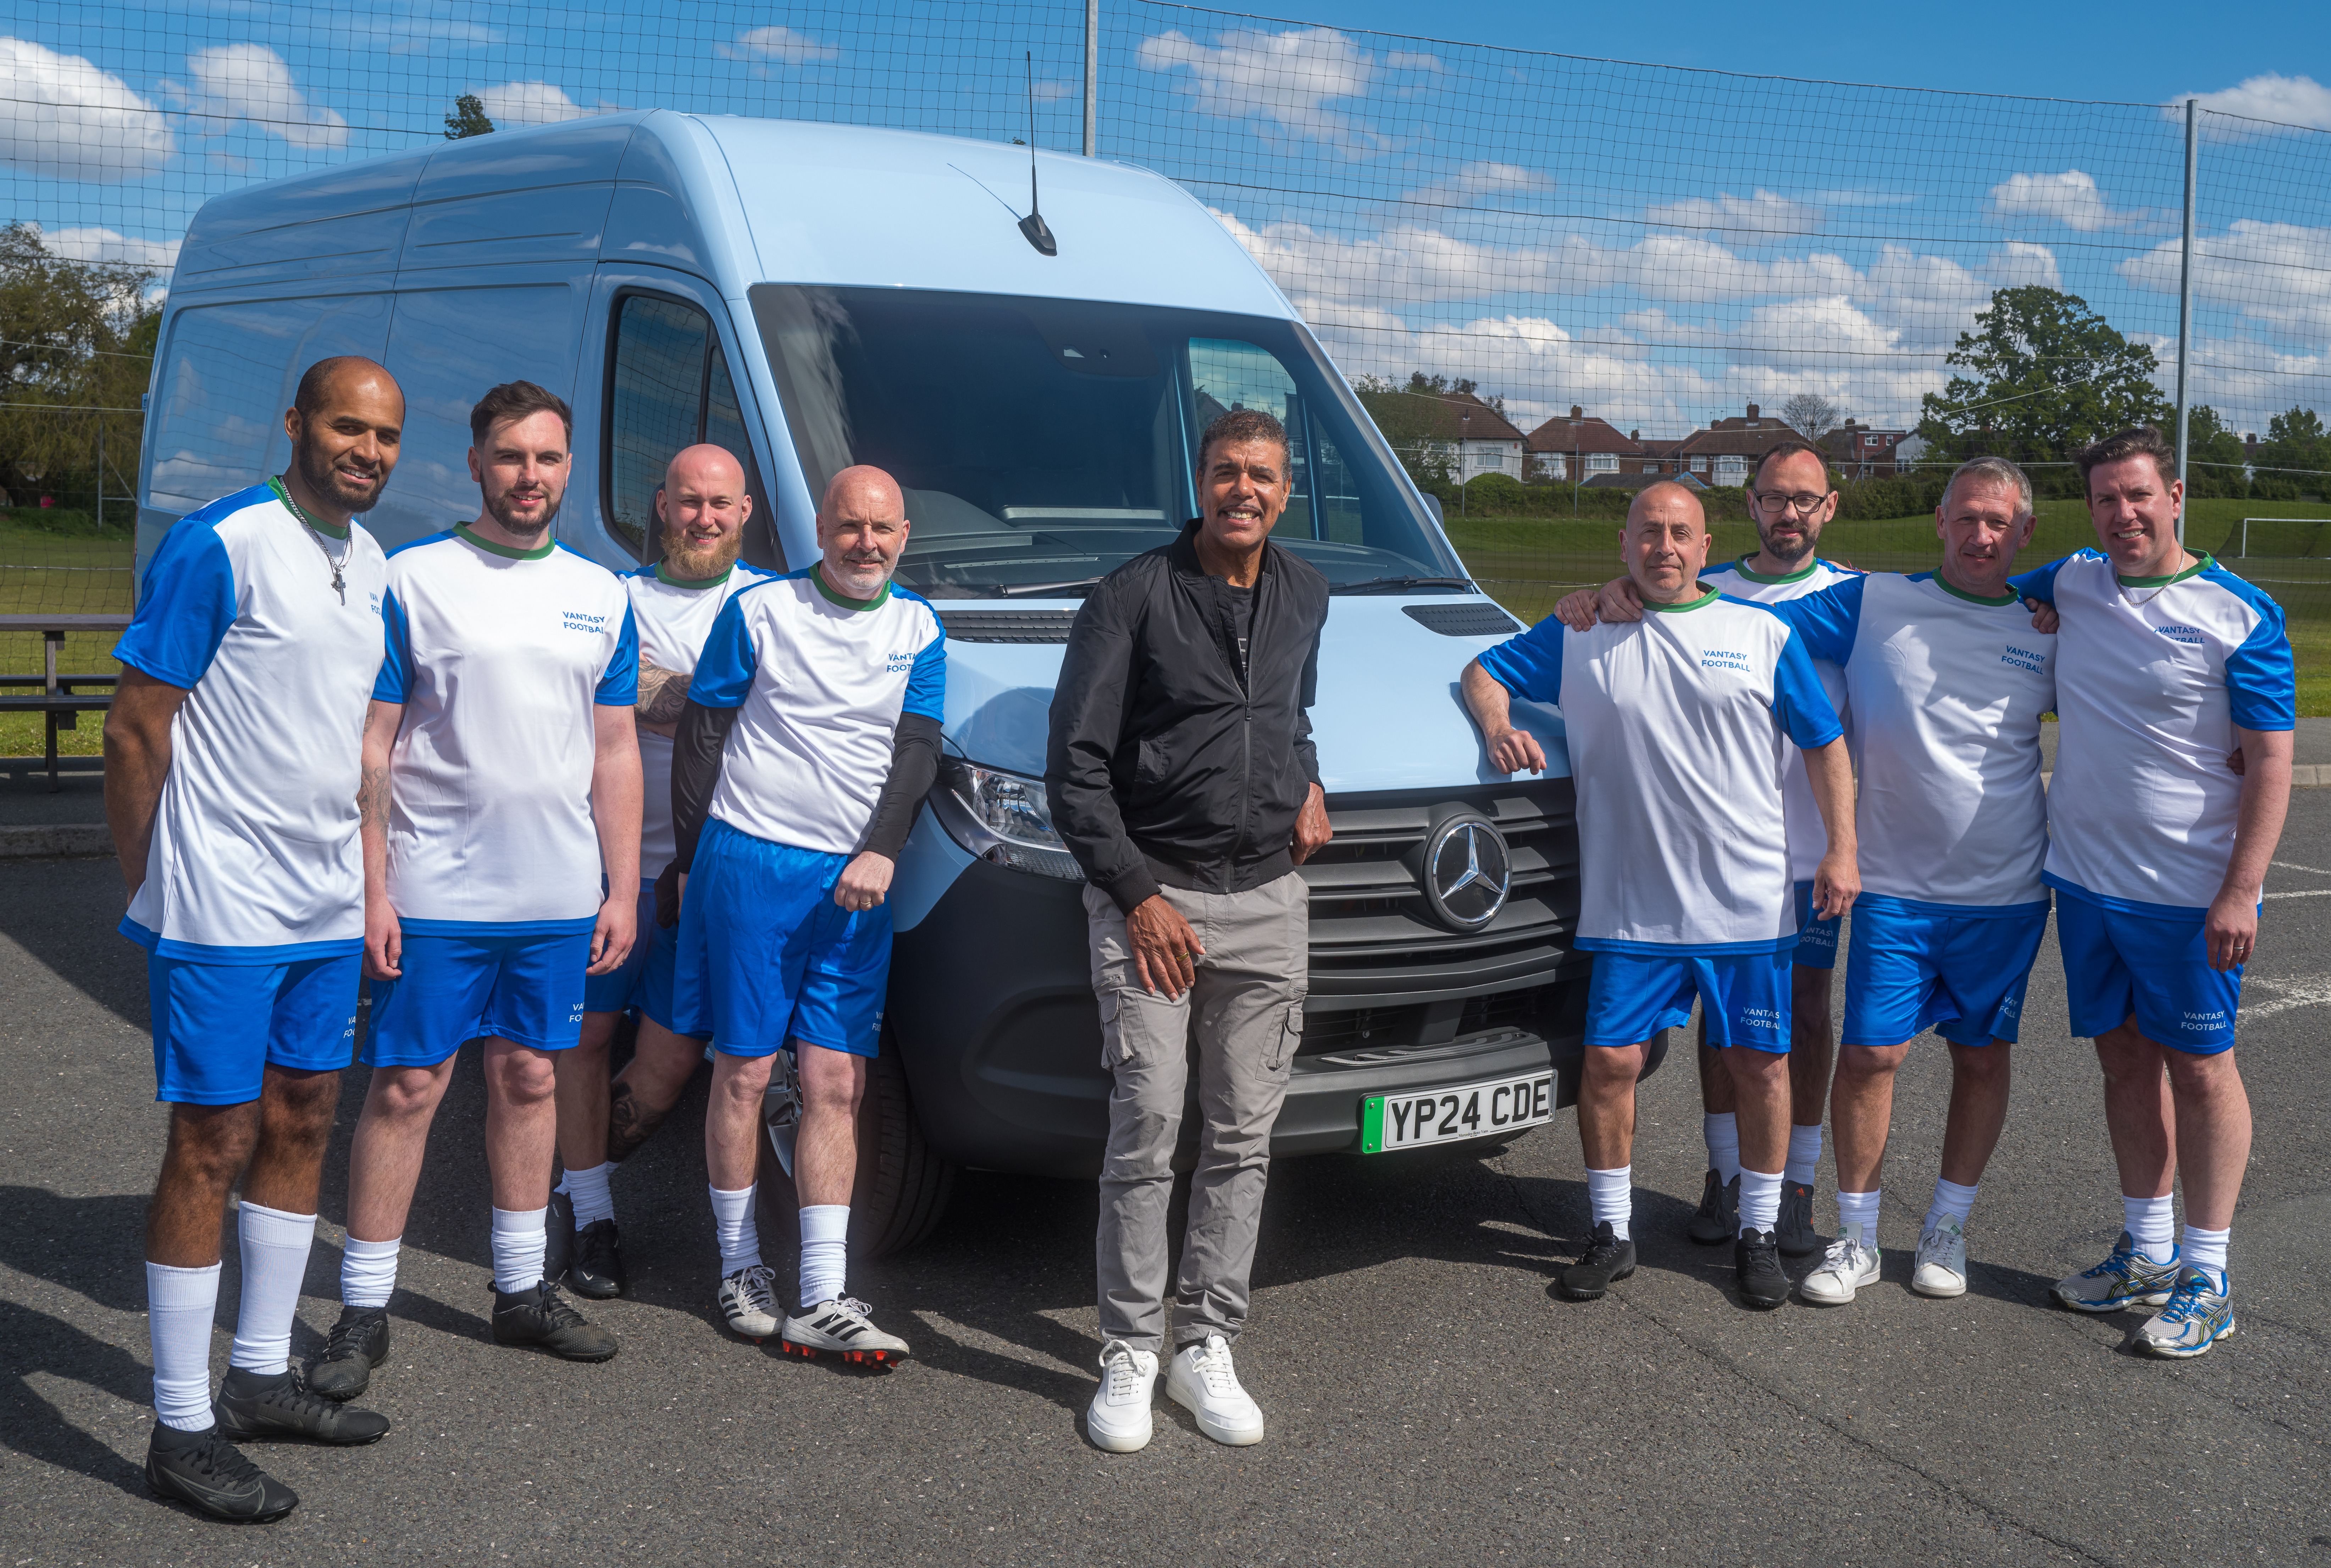 Der ehemalige Experte von Sky Sports startet ein Vantasy-Fußballturnier, um die psychische Gesundheit von Transporterfahrern zu verbessern